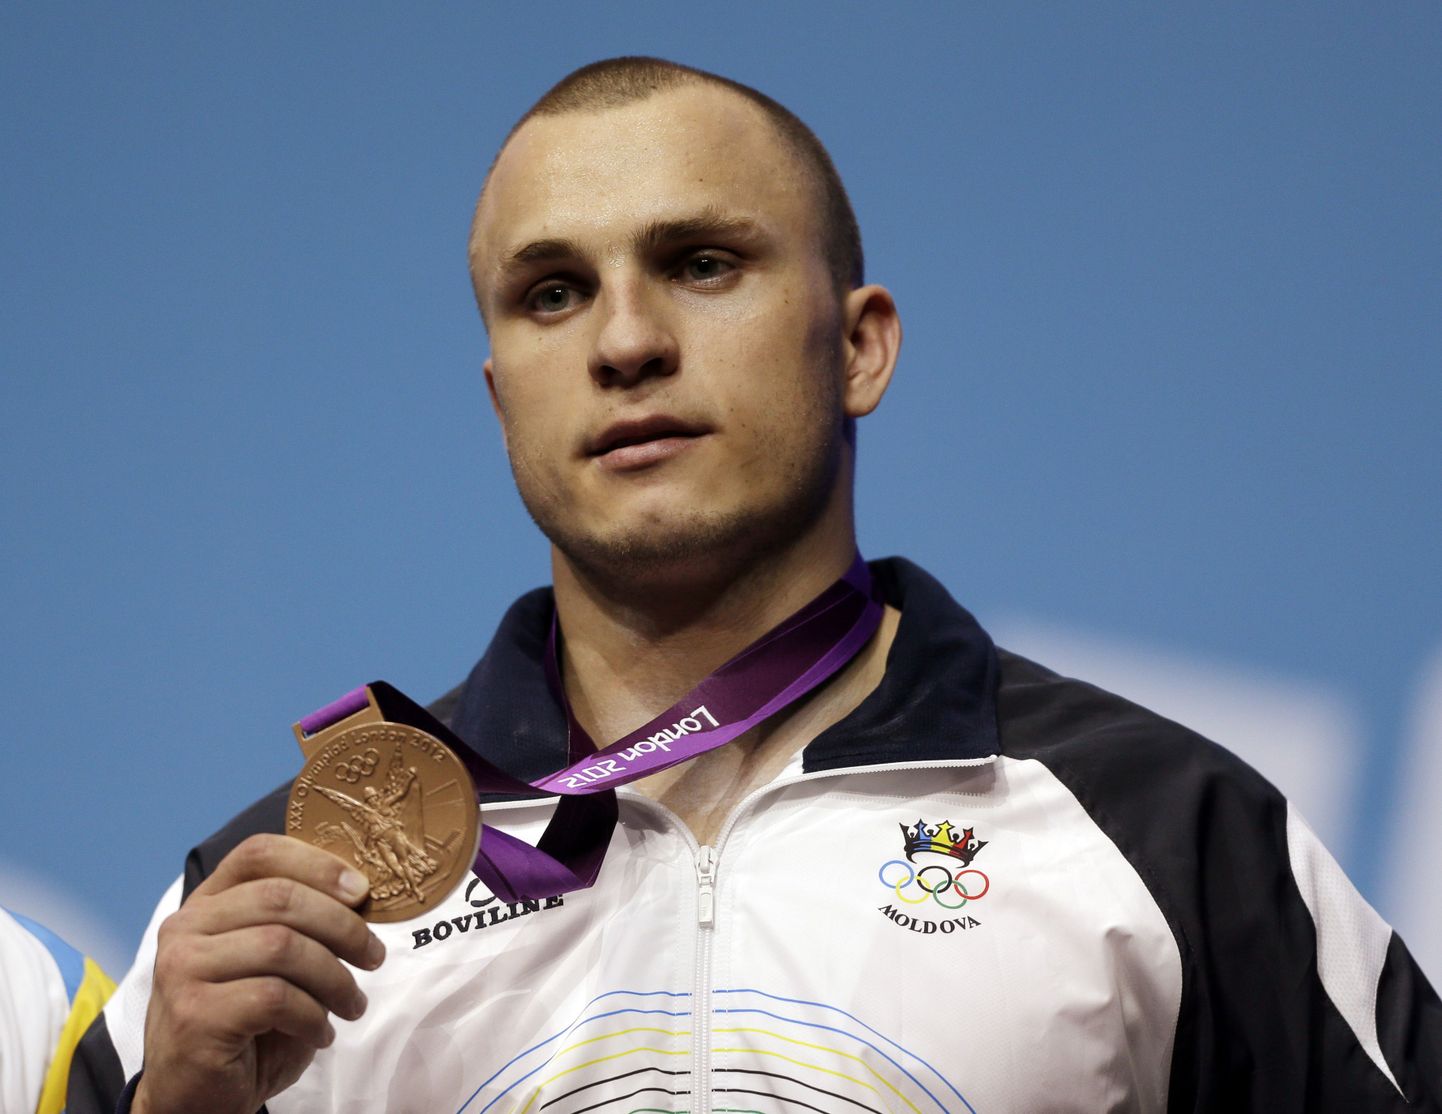 Anatoli Ciricu peab oma Londoni olümpiamängude medalist loobuma.